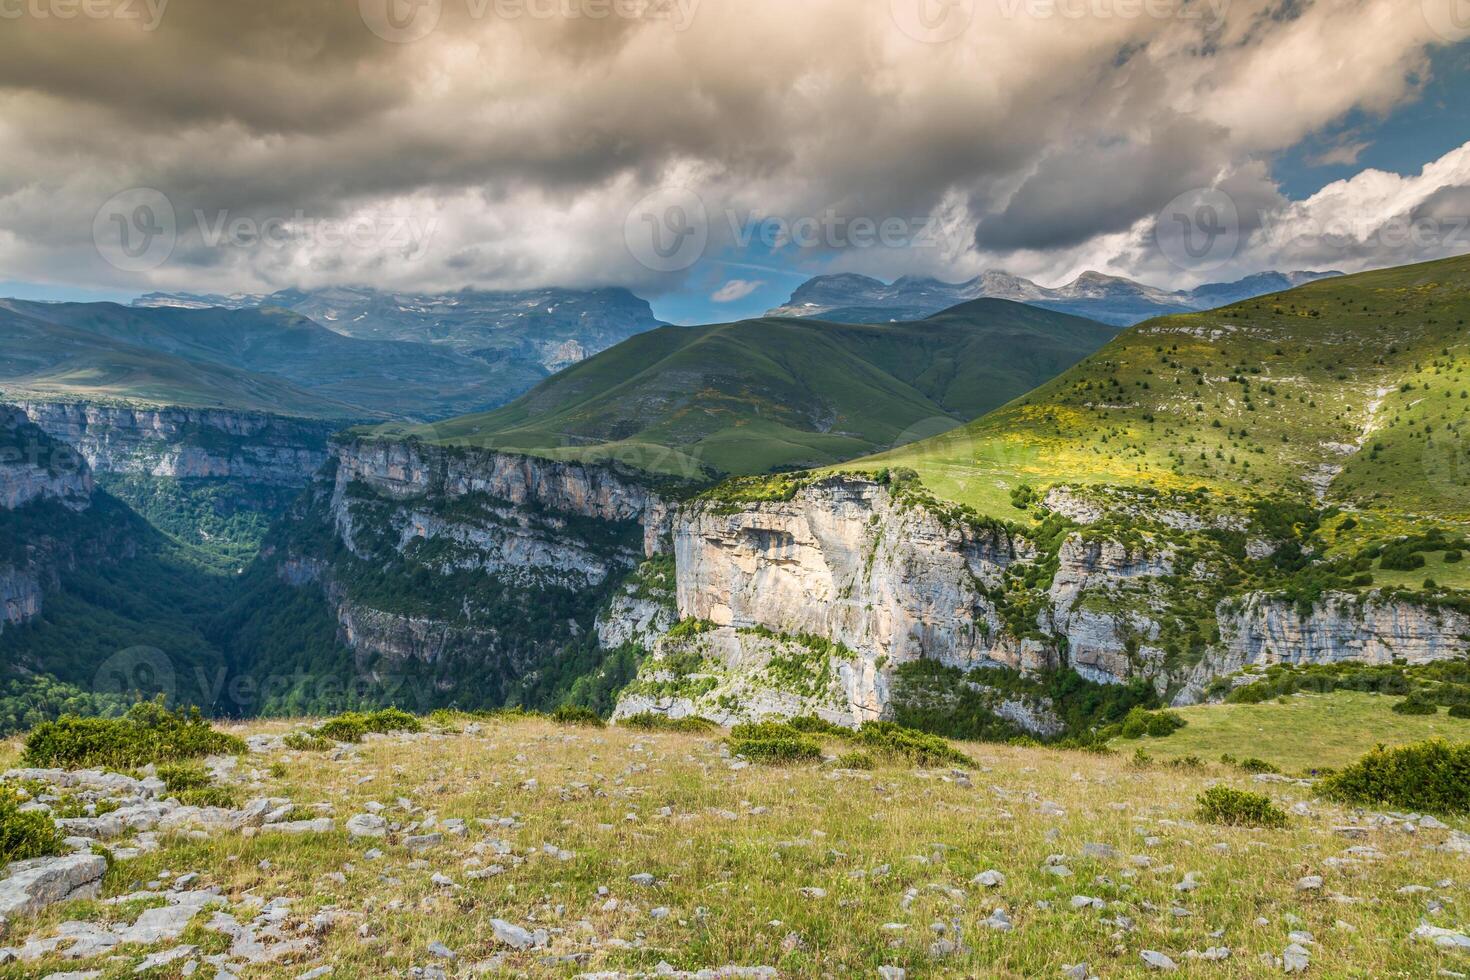 Ravijn de anisclo in parque nacional ordesa y monte perdido, Spanje foto